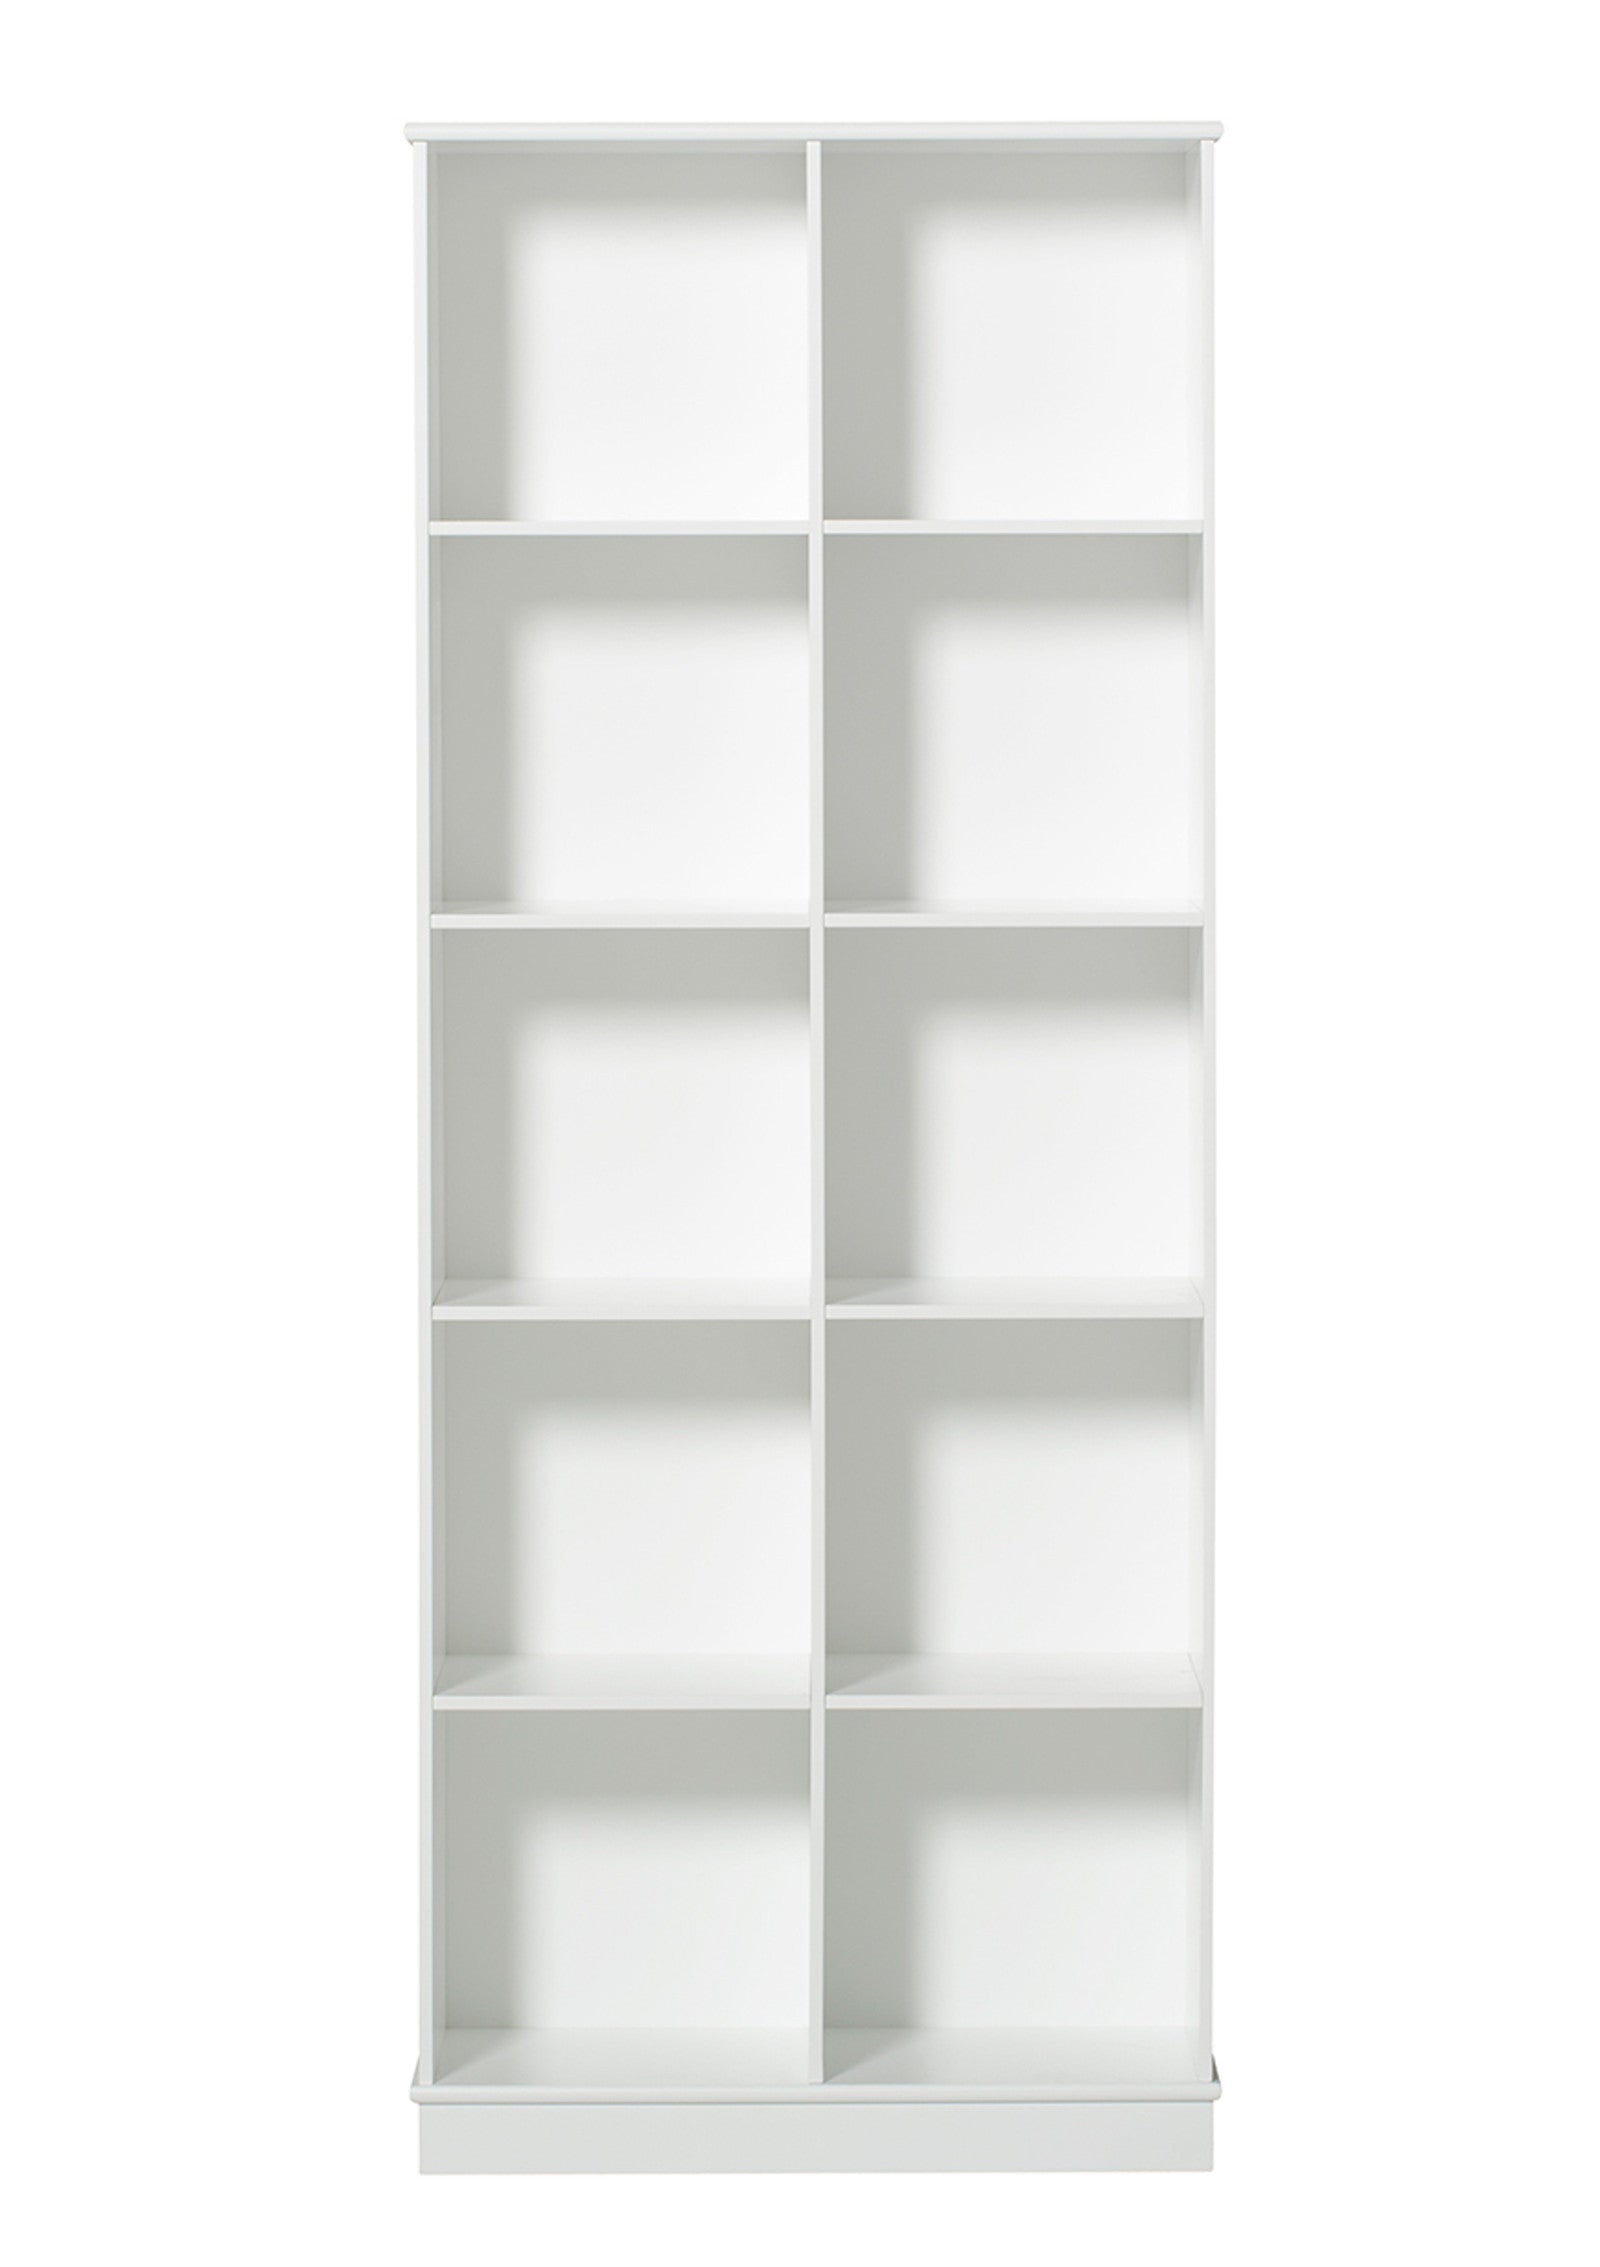 'Wood' Standregal vertikal 2 x 5 m / weiß mit Sockel